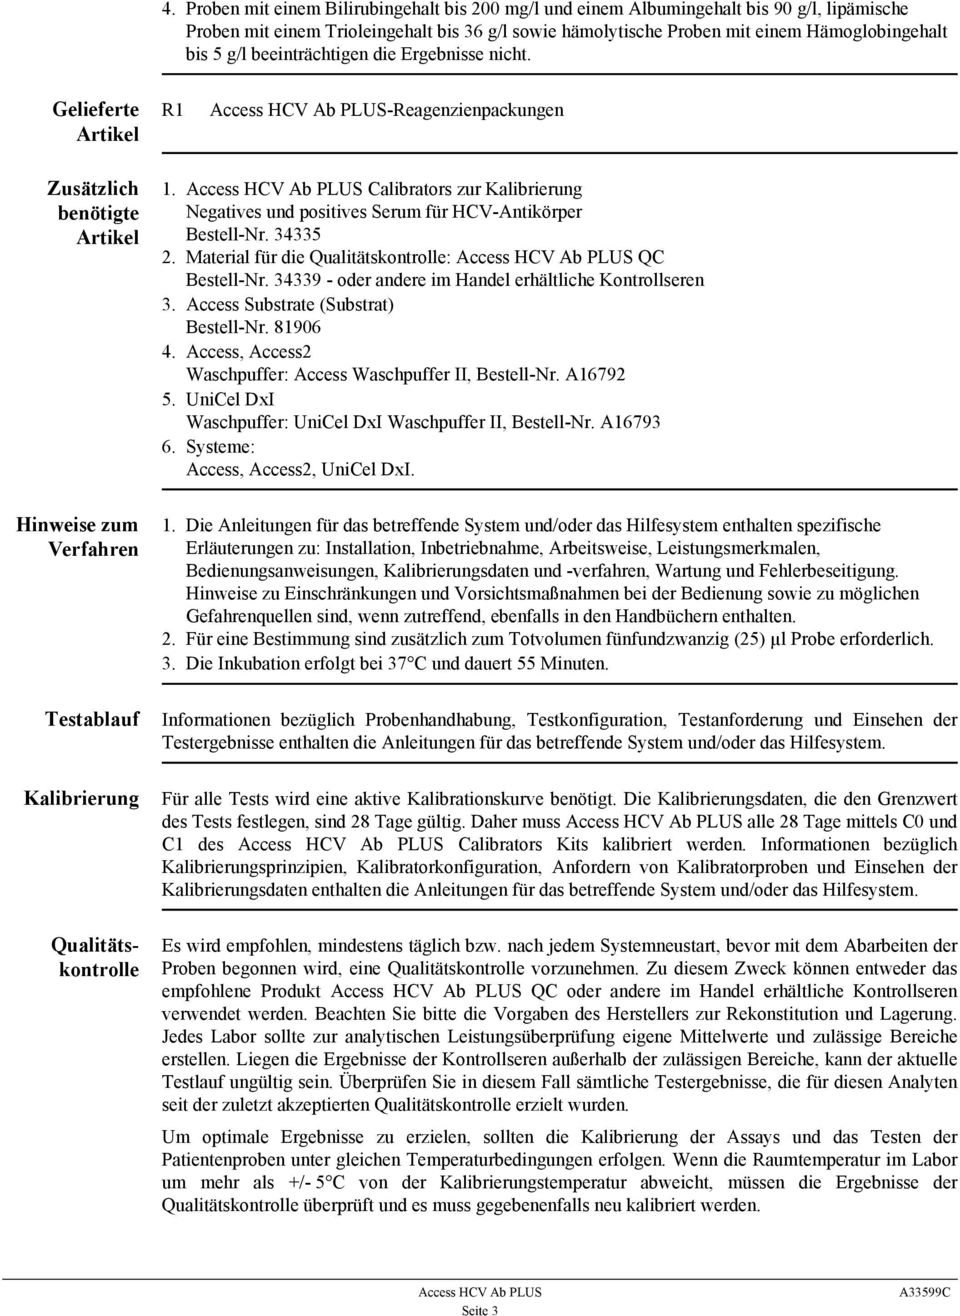 Calibrators zur Kalibrierung Negatives und positives Serum für HCV-Antikörper Bestell-Nr. 34335 2. Material für die Qualitätskontrolle: QC Bestell-Nr.